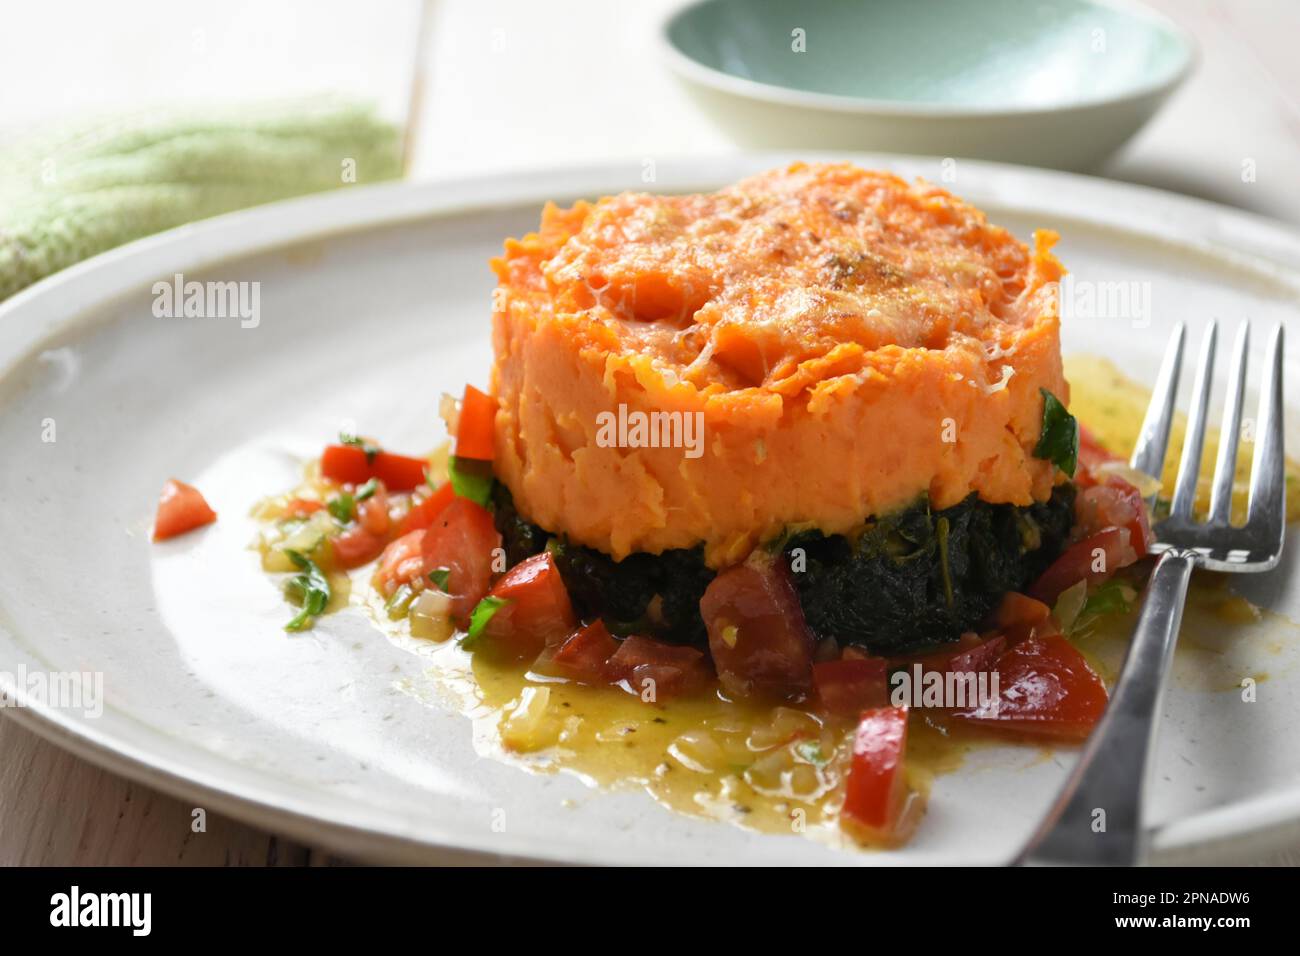 Patate dolci con kale servite su un piatto Foto Stock